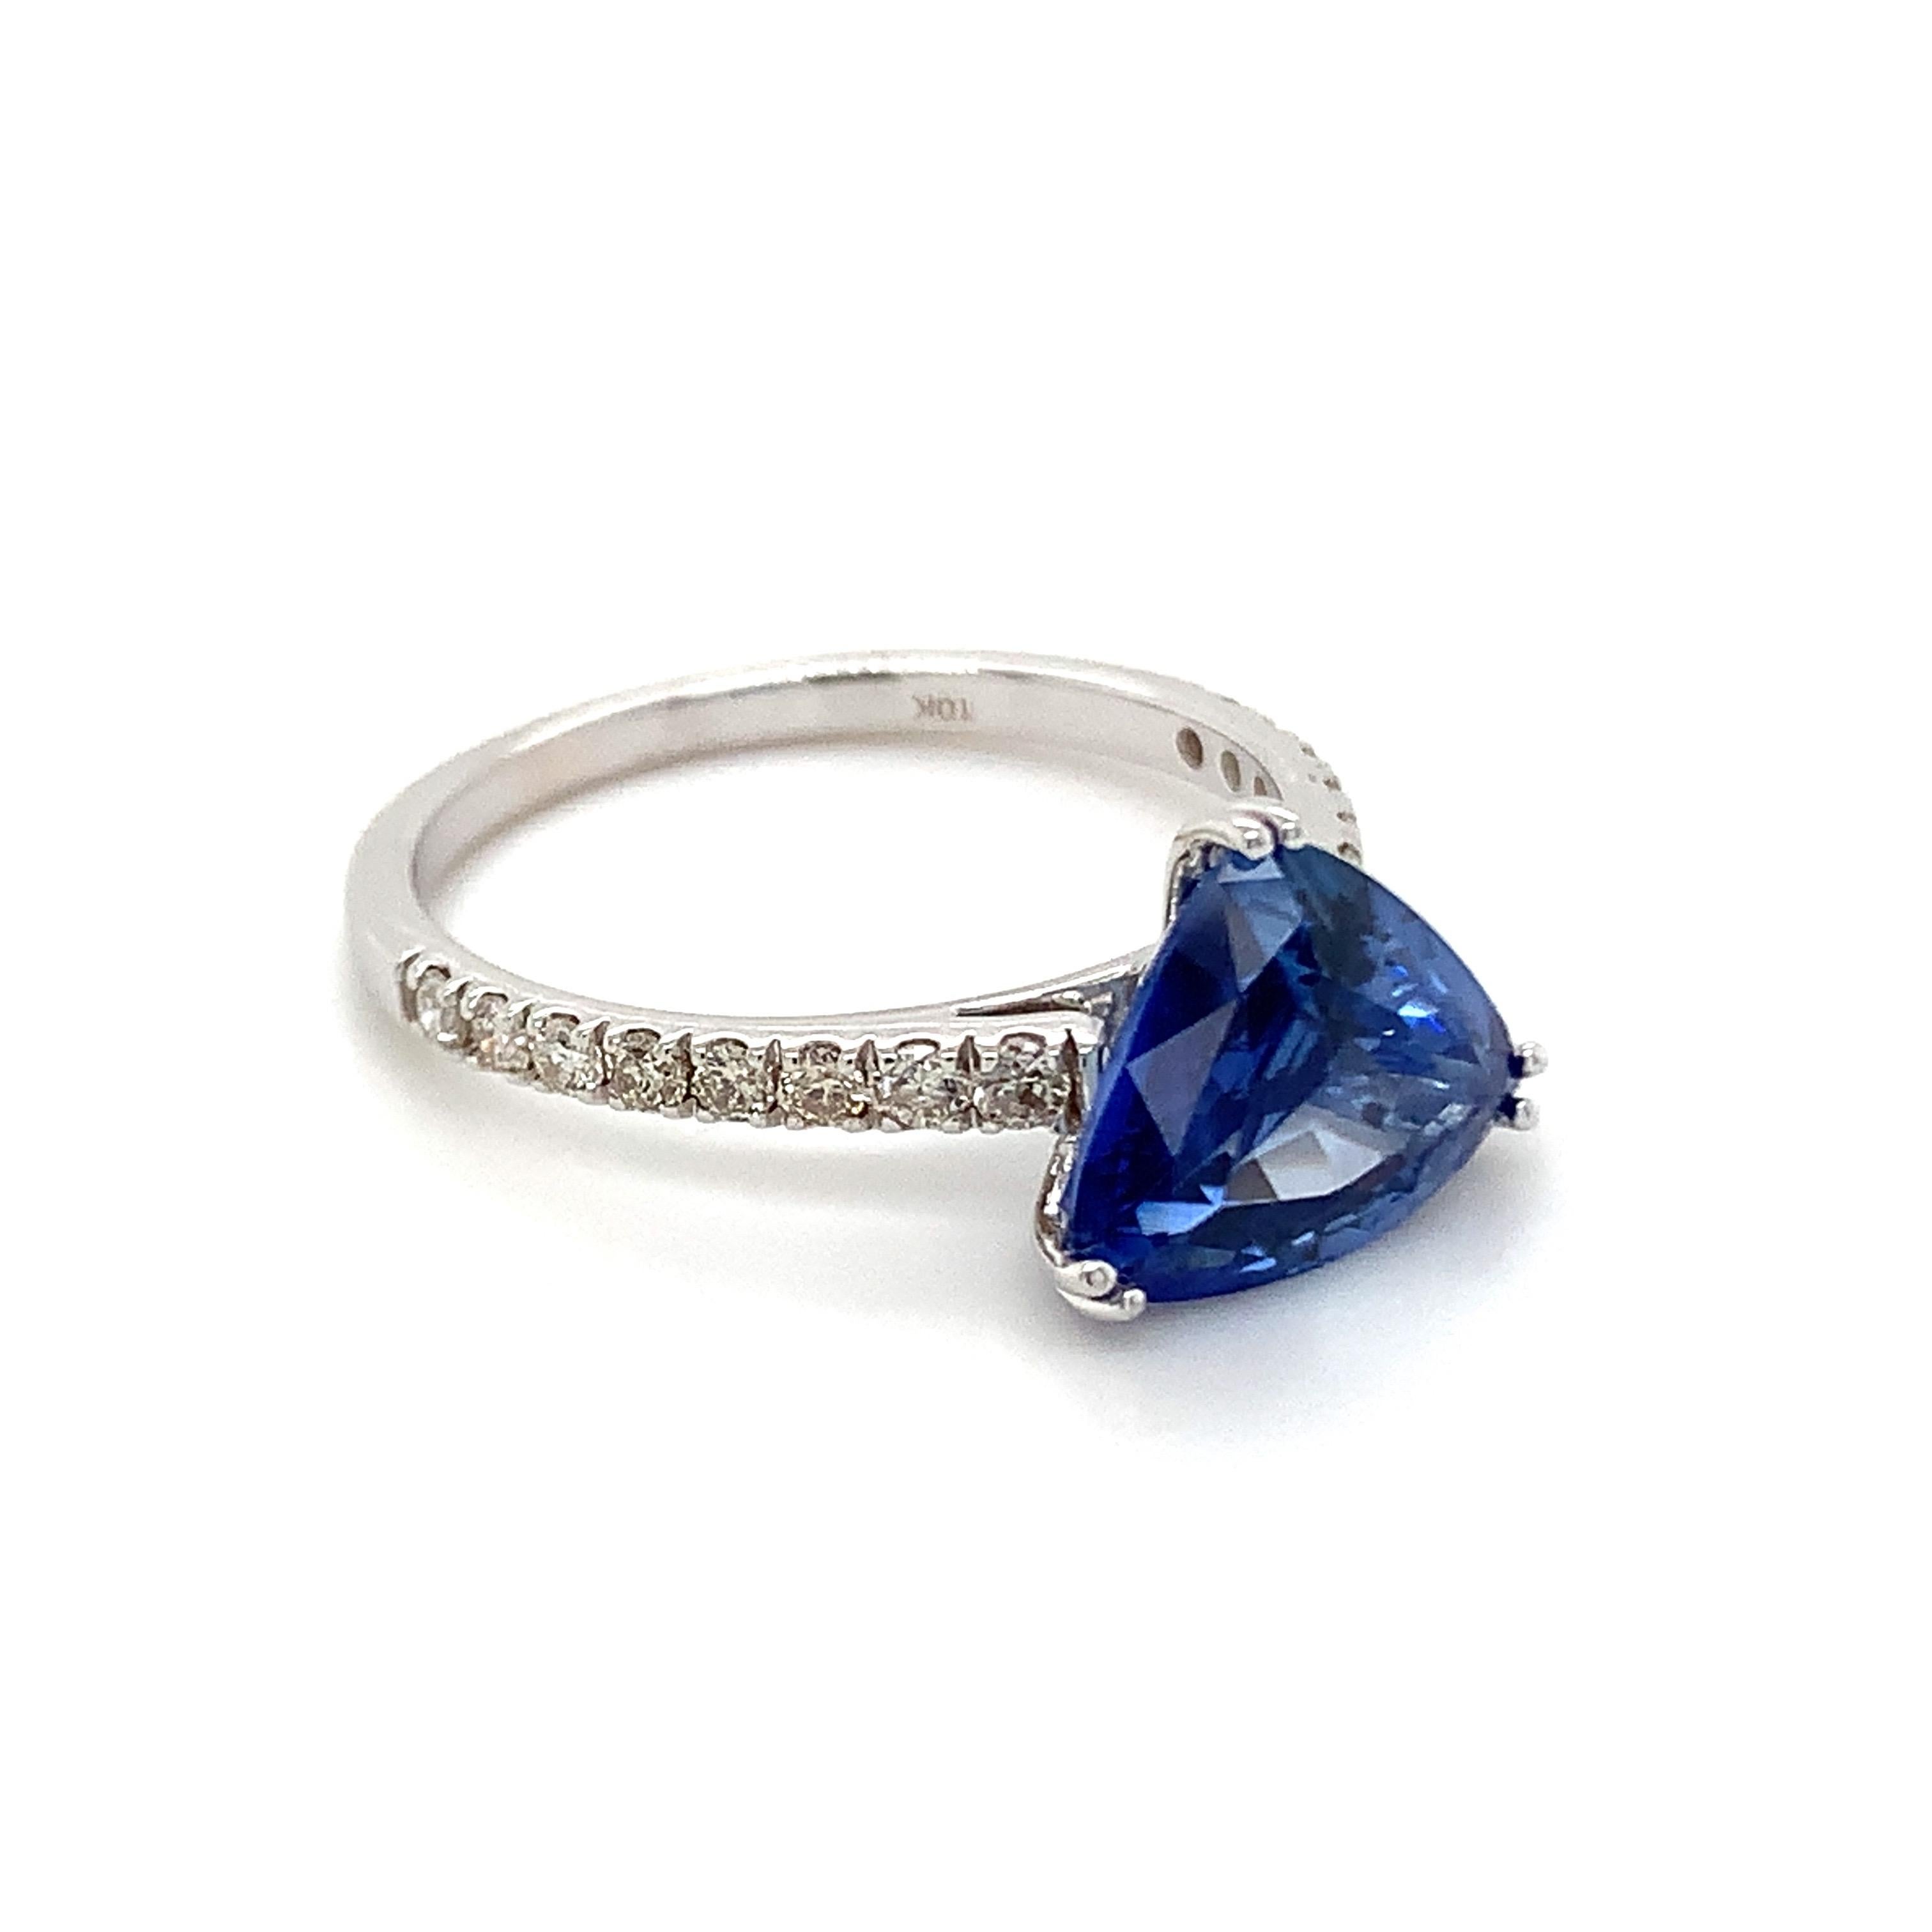 Saphir bleu de forme trillion magnifiquement travaillé dans une bague en or blanc 10K avec des diamants naturels.

Pierre de naissance très précieuse du mois de septembre, d'un bleu ravissant. On pense qu'ils apportent chance et fortune dans la vie.